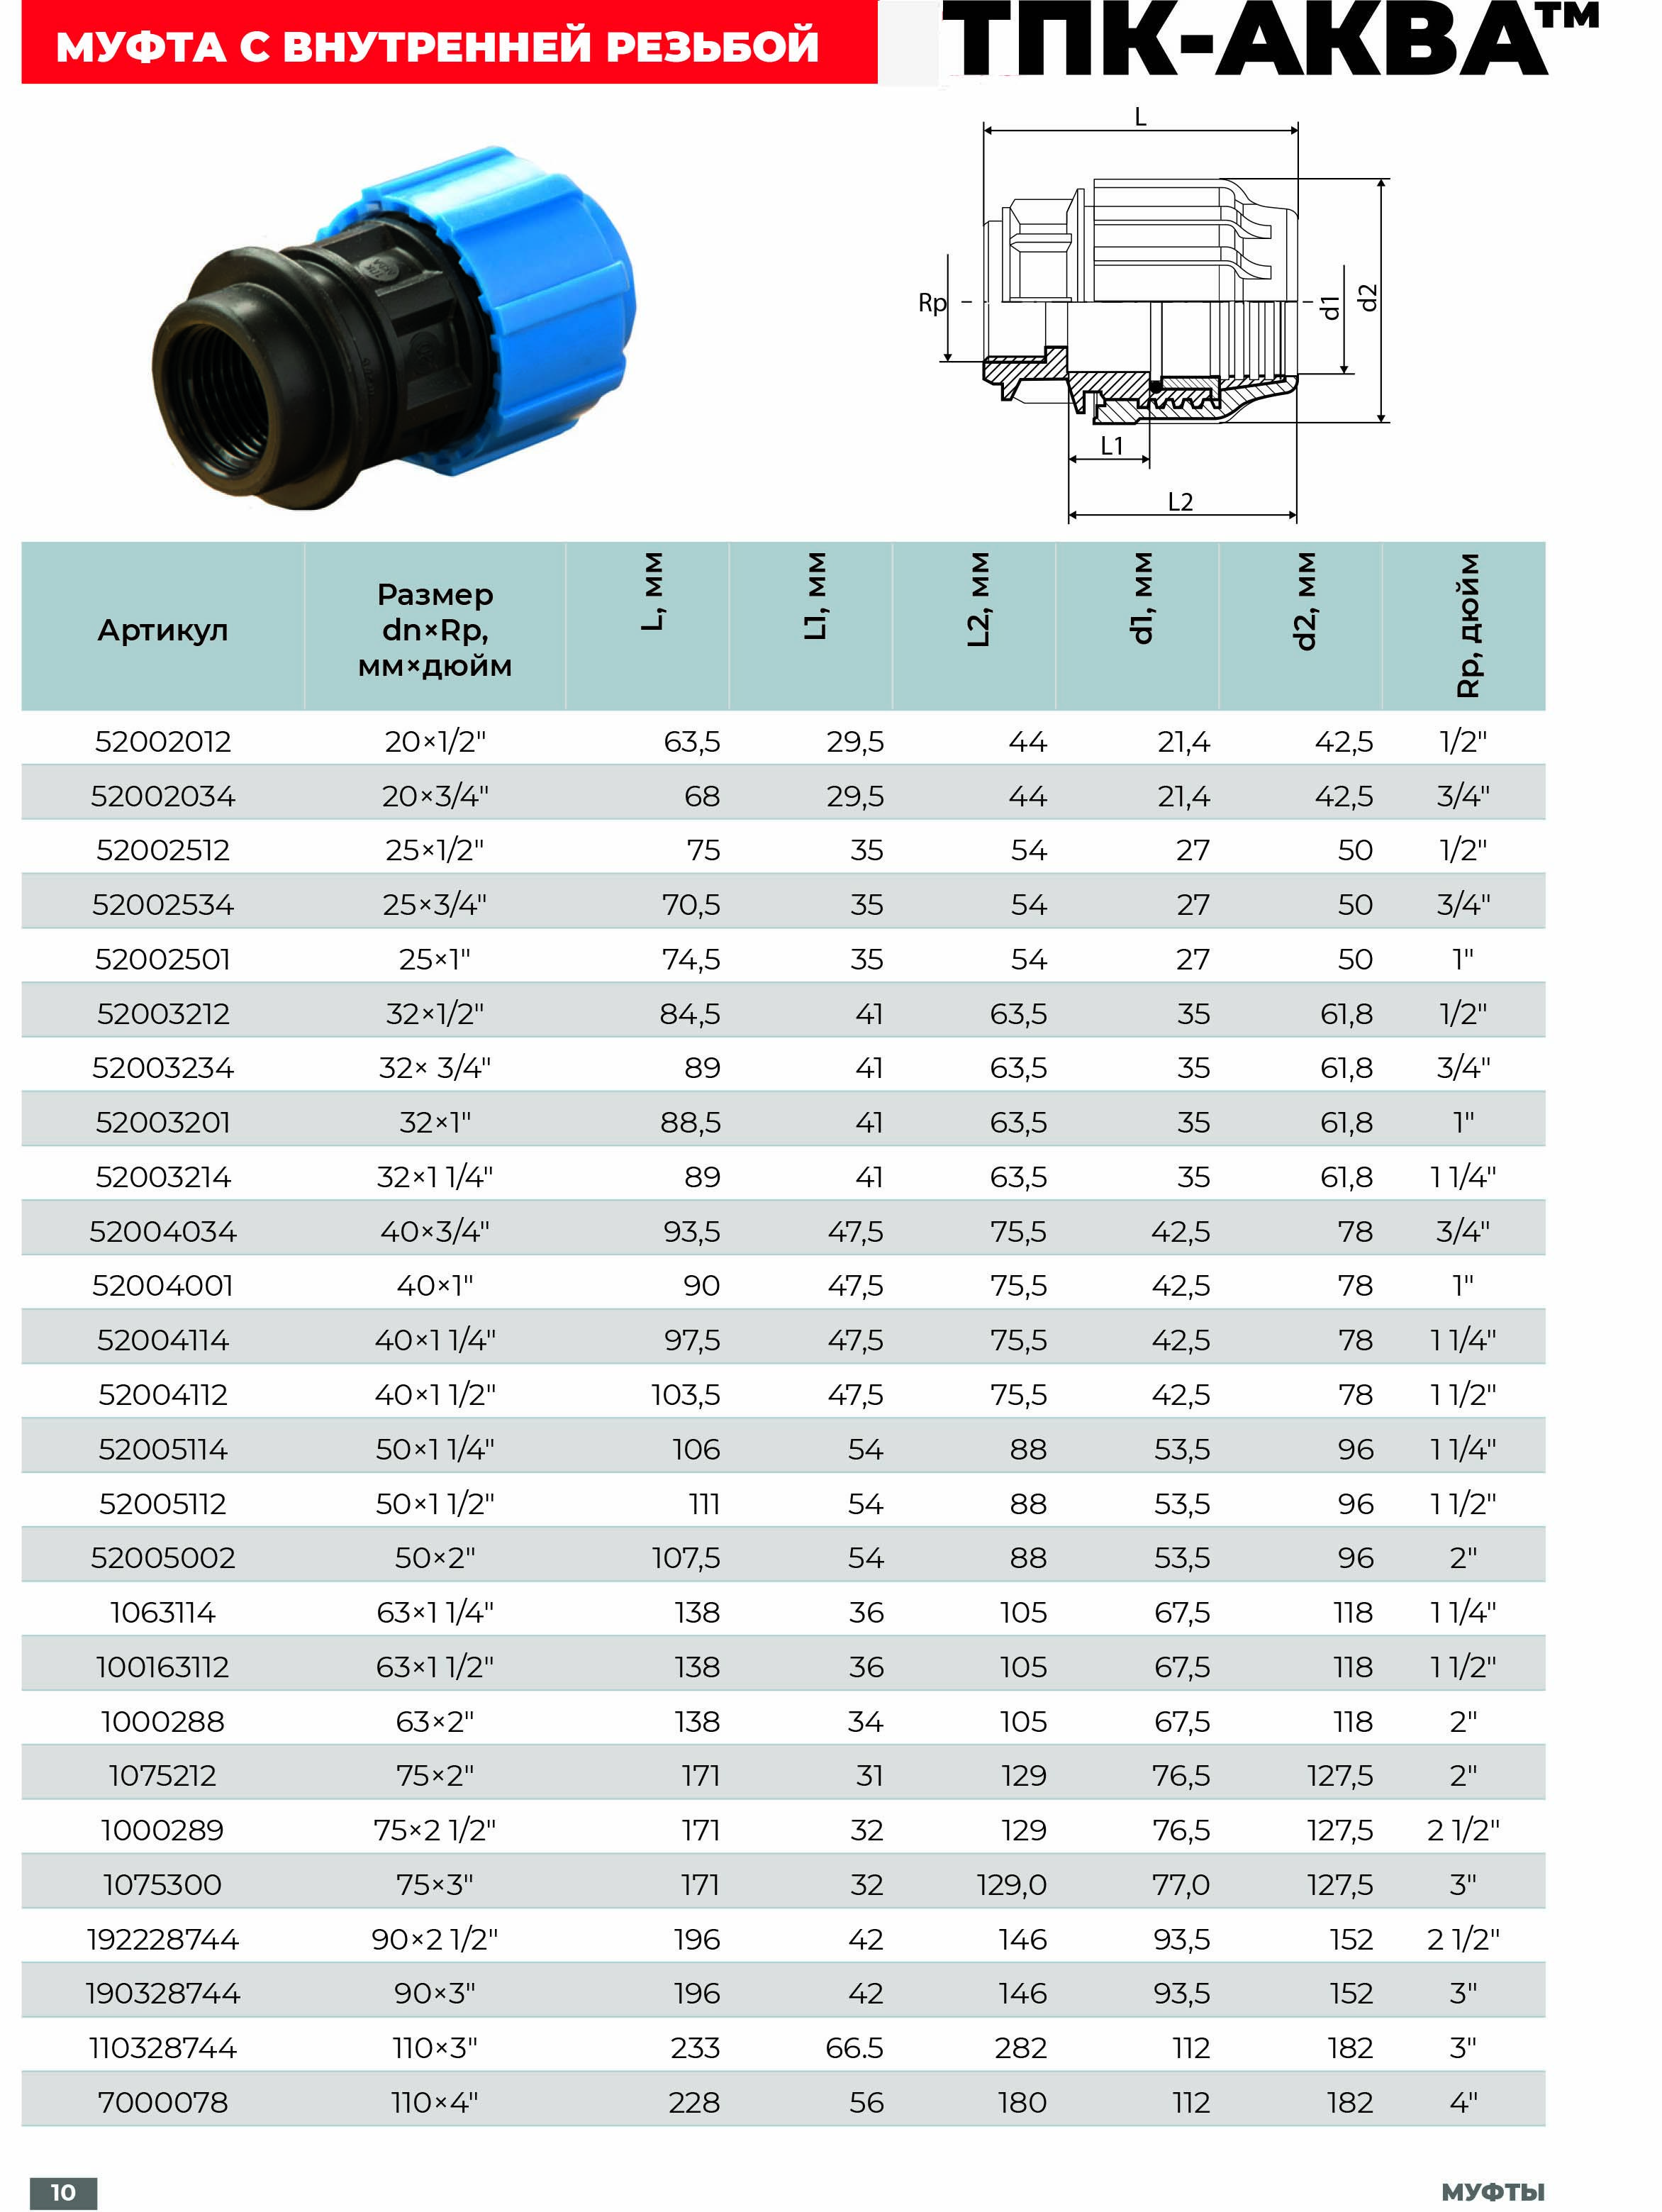 Водопроводные трубы пнд для холодного водоснабжения, характеристика и монтаж полиэтиленового водопровода и фитингов